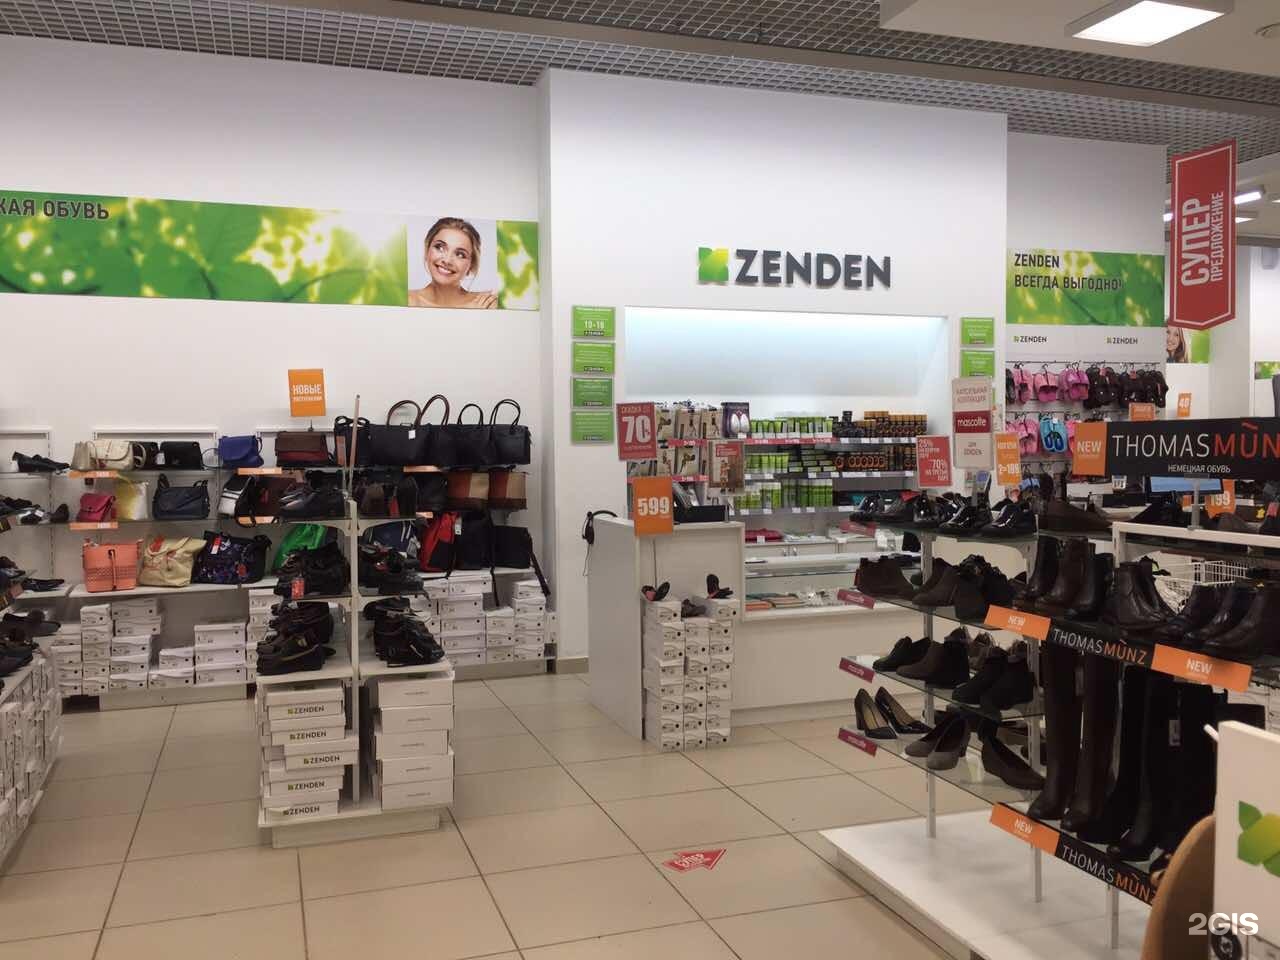 Сайт обуви zenden. Обувной магазин Zenden. Магазин зенден обувь. Витрина зенден. Зенден фото магазина.